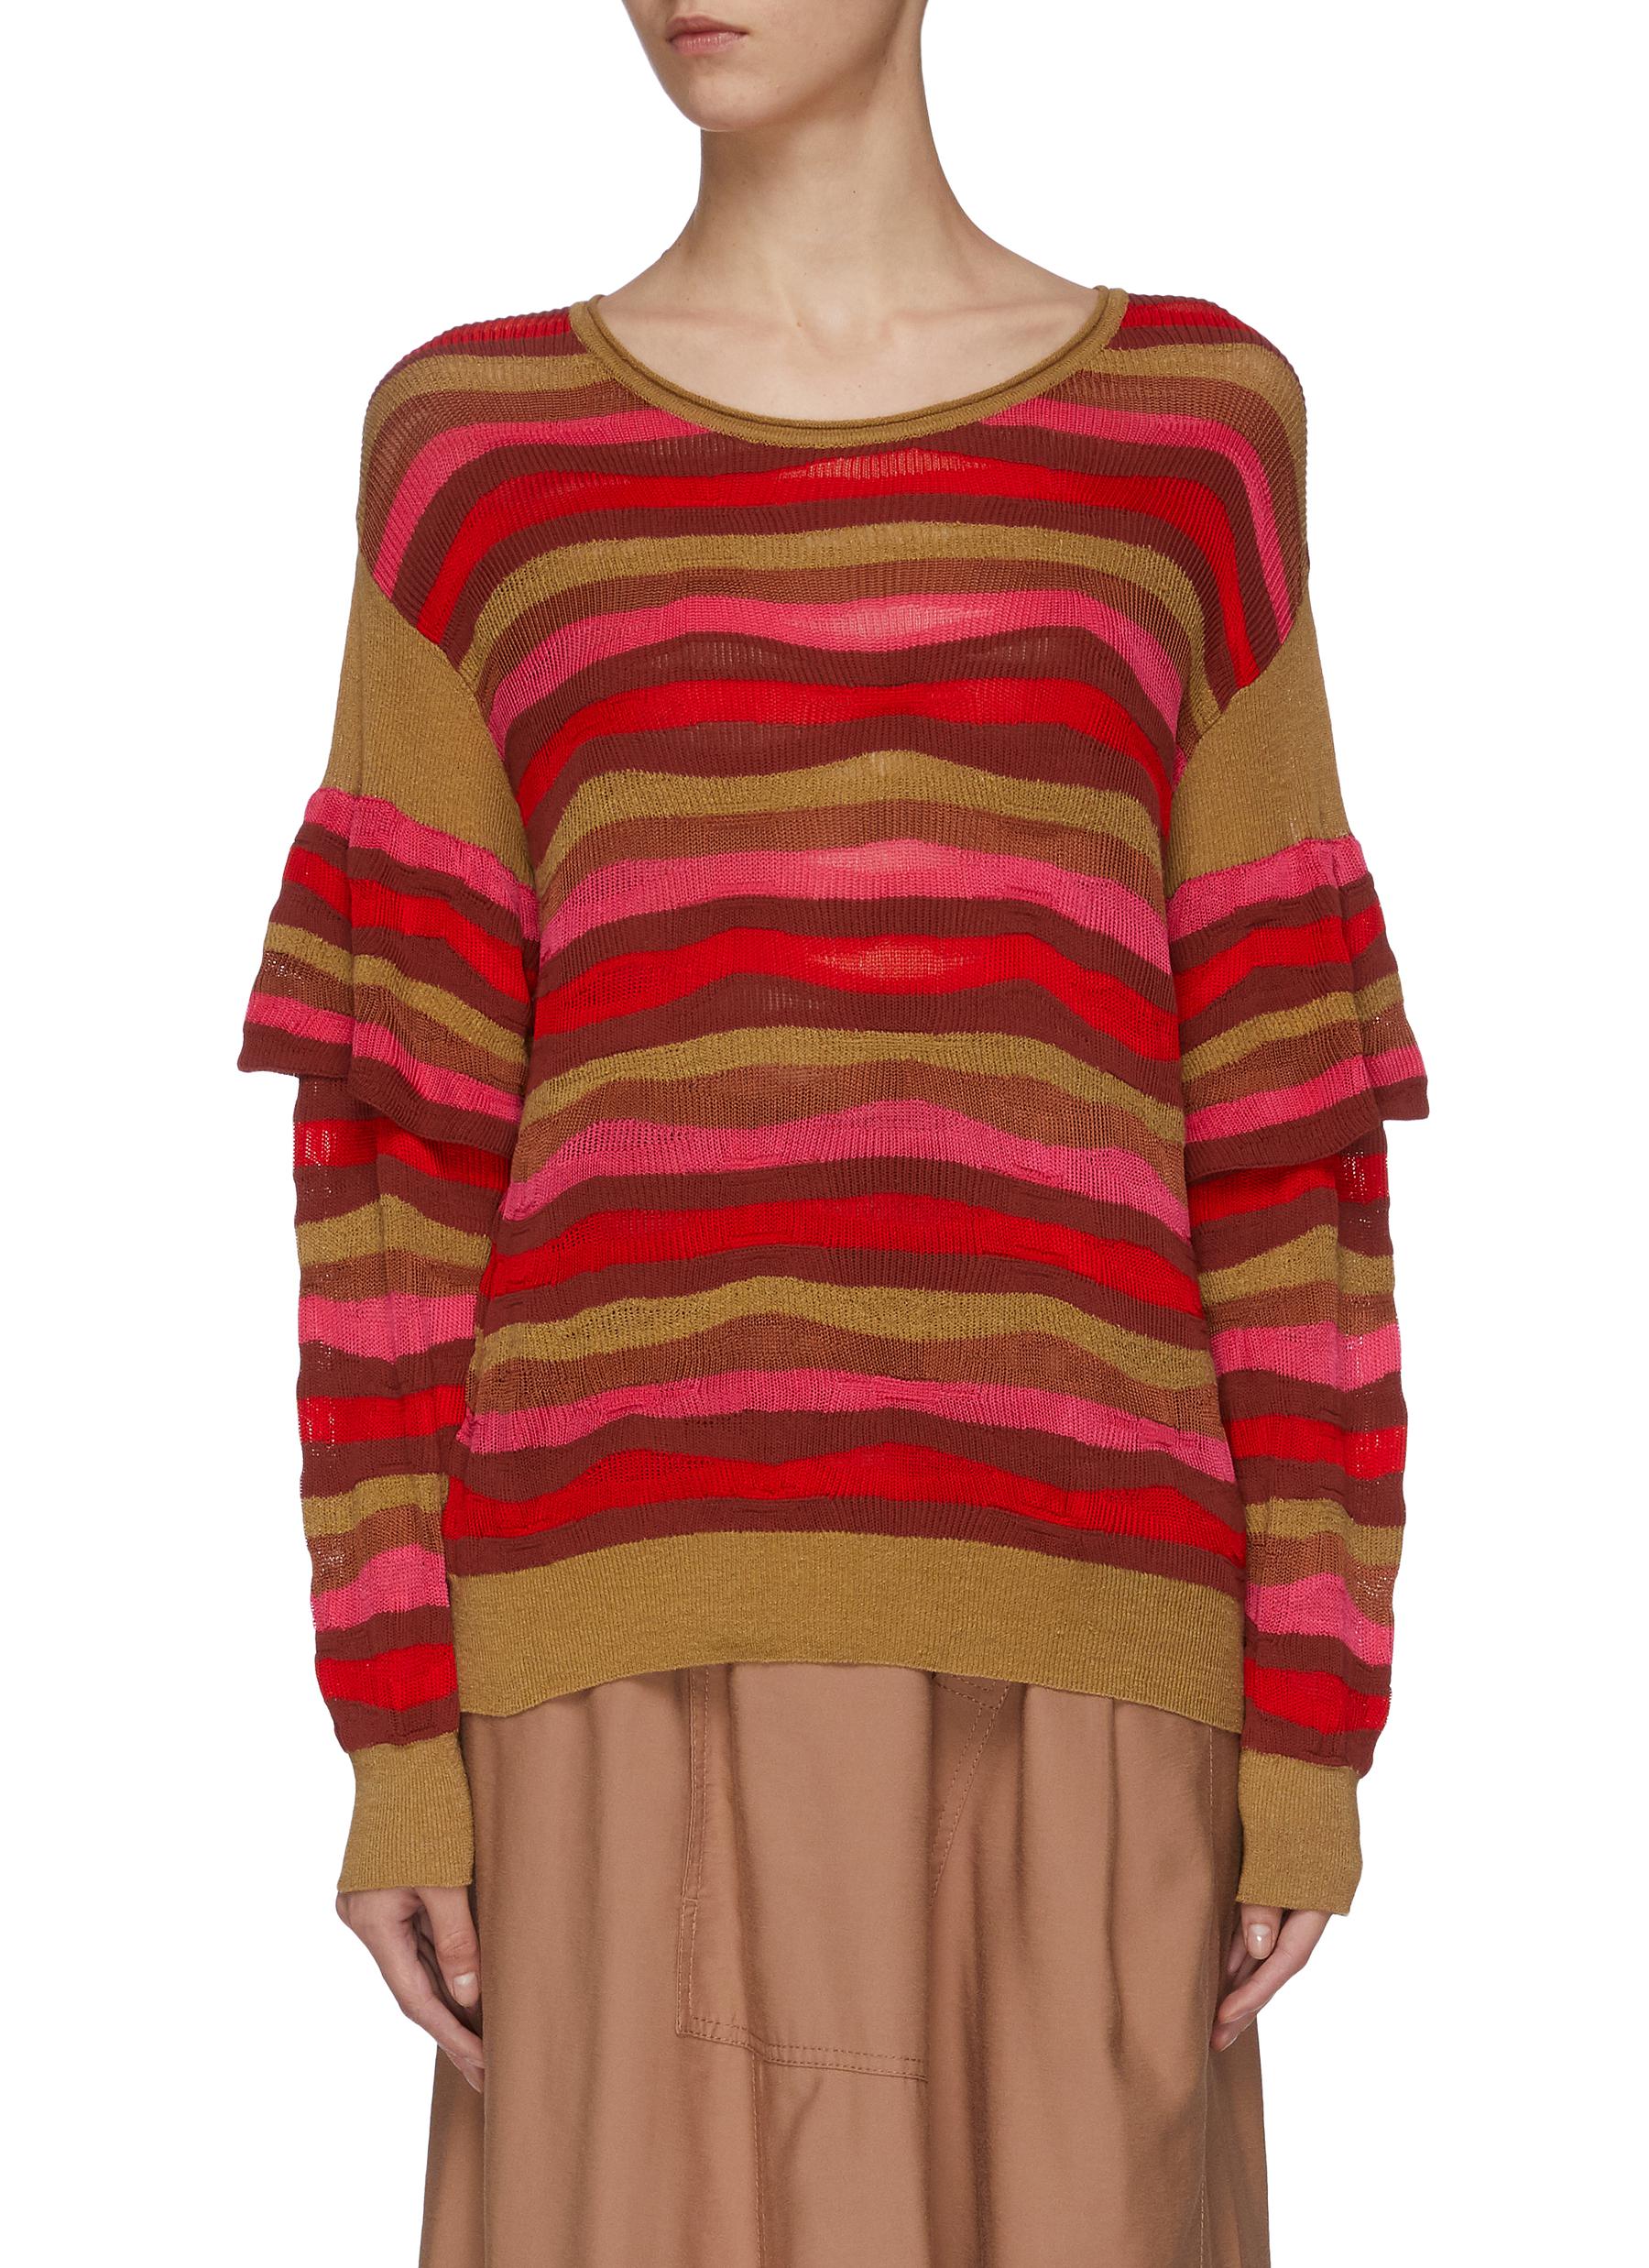 Ruffle sleeve stripe sweater by Sonia Rykiel